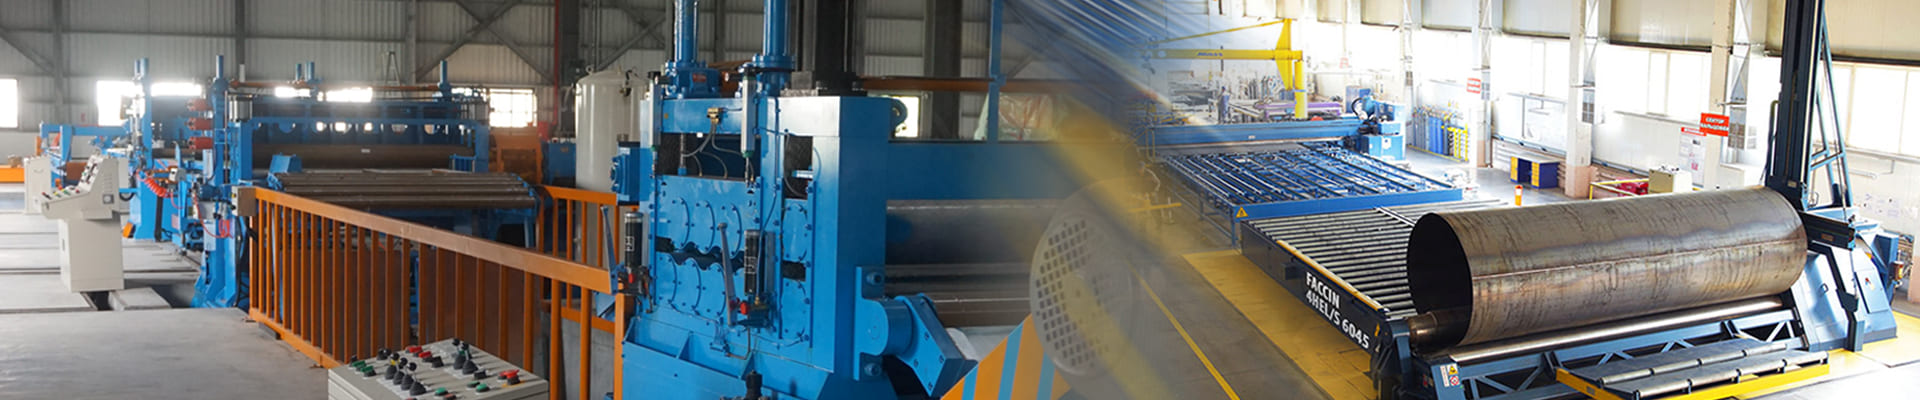 加龍加達鋼業股份有限公司秉持誠信和熱忱的服務態度永續經營。